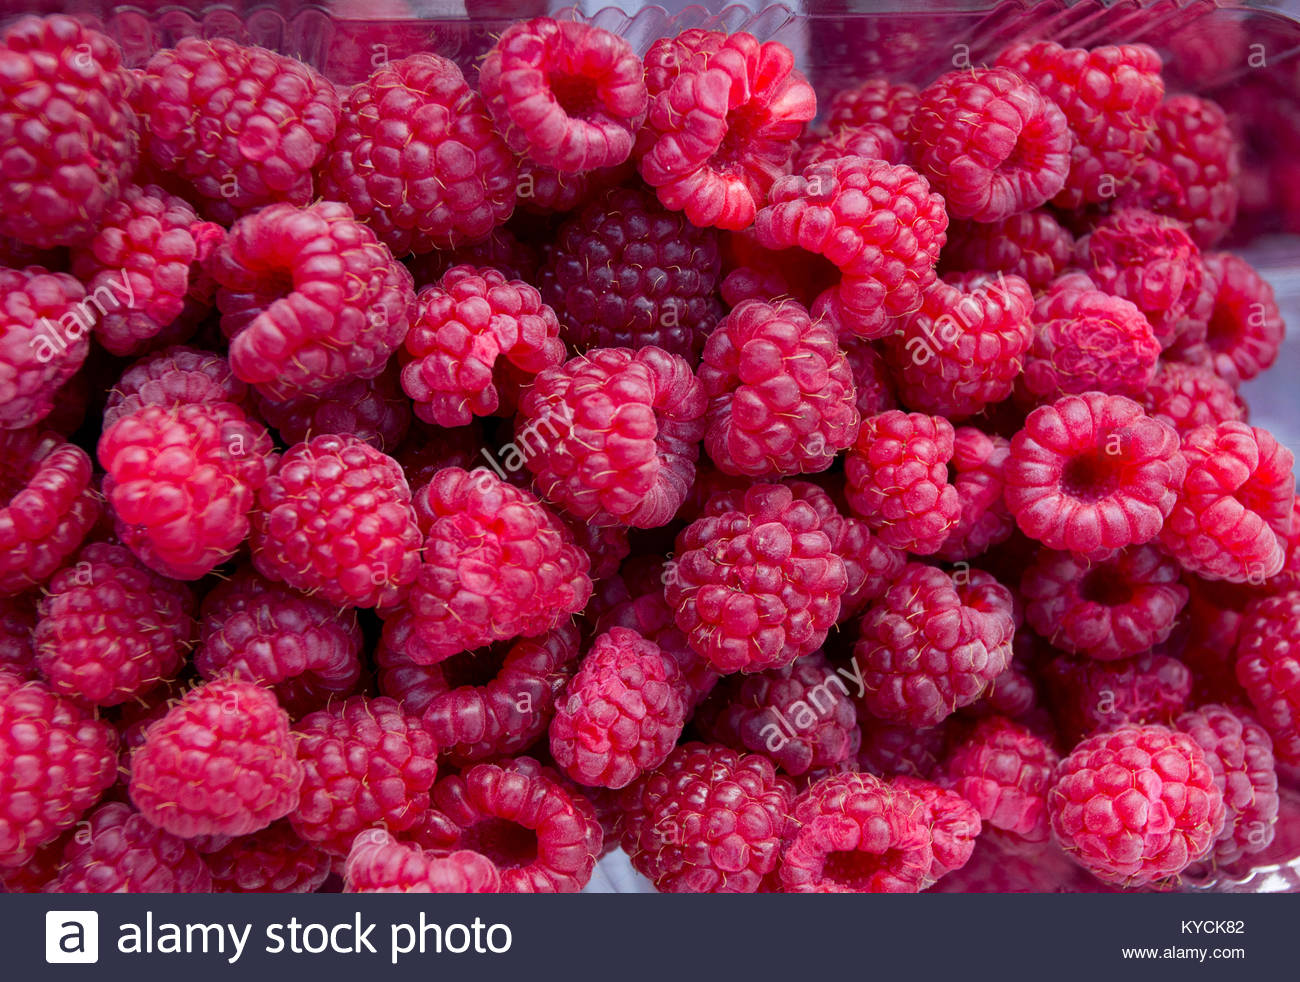 Raspberry Fresh Organic Raspberries Fruits As